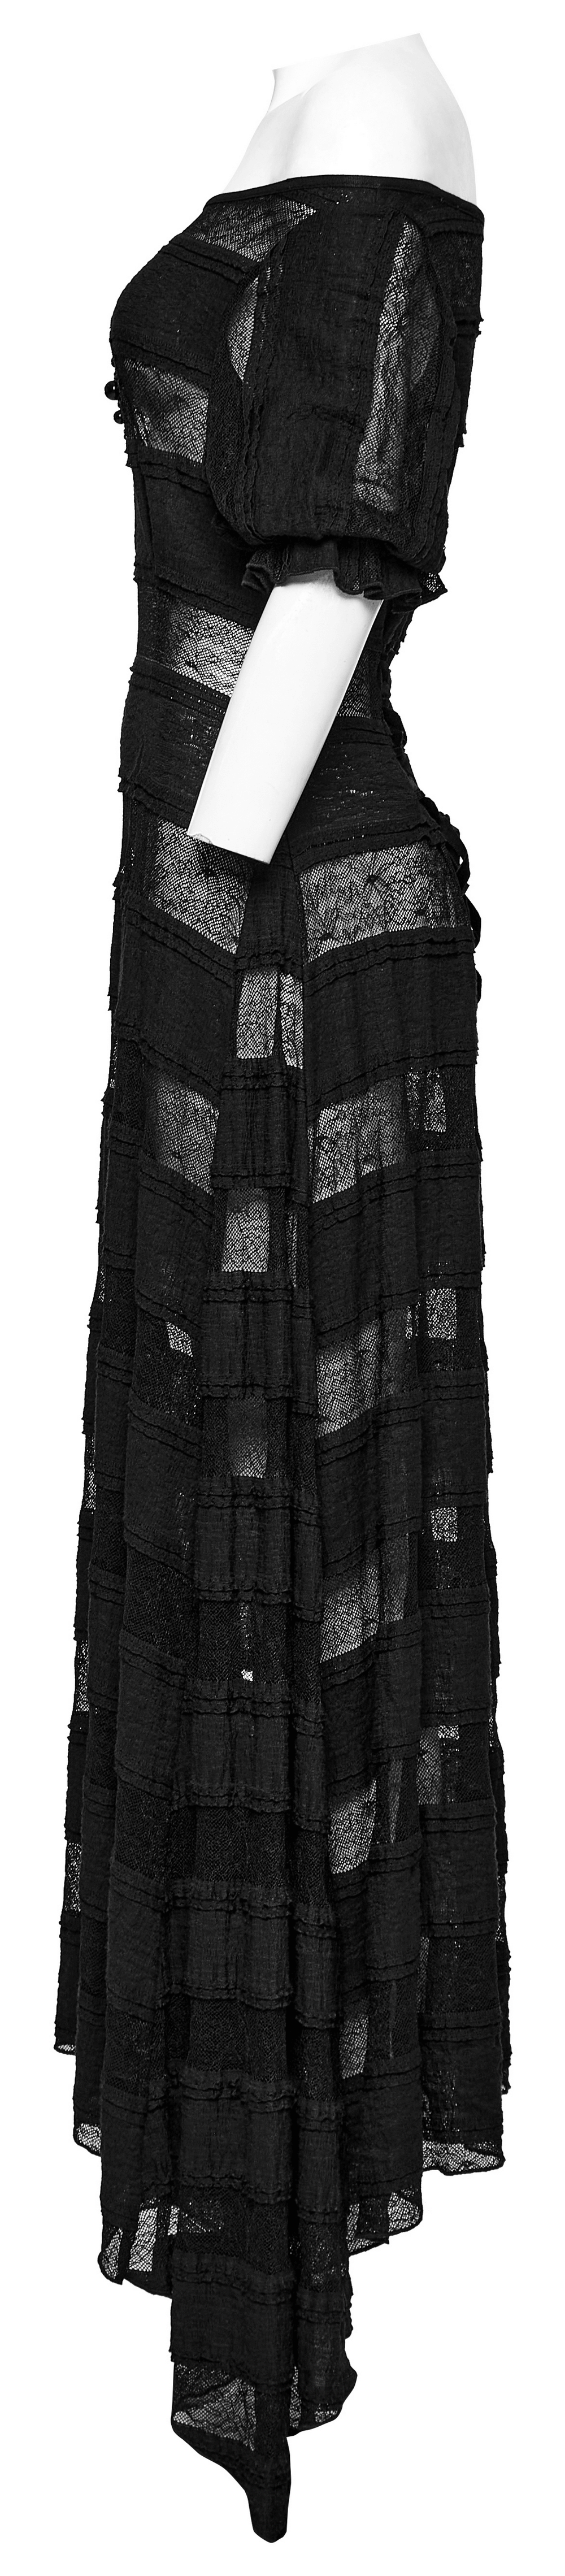 Vestido gótico etéreo de encaje y manga corta